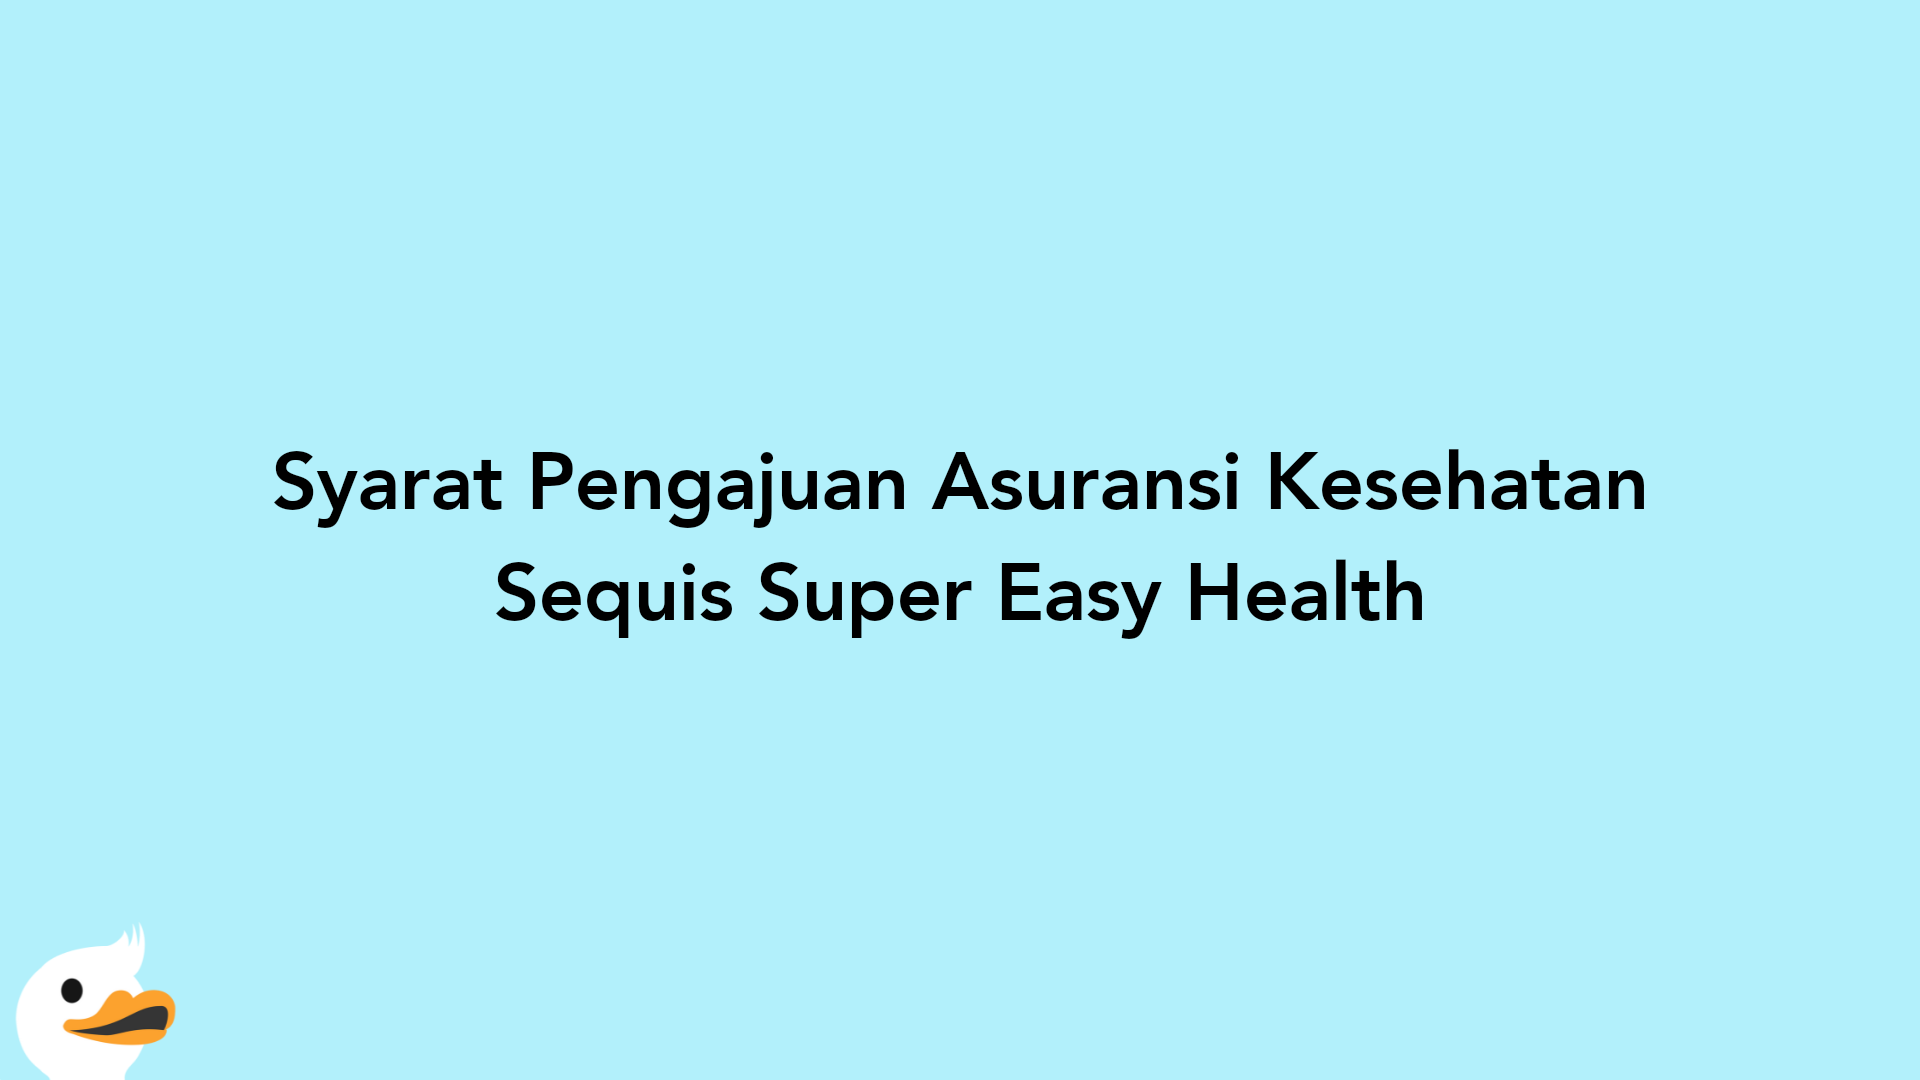 Syarat Pengajuan Asuransi Kesehatan Sequis Super Easy Health